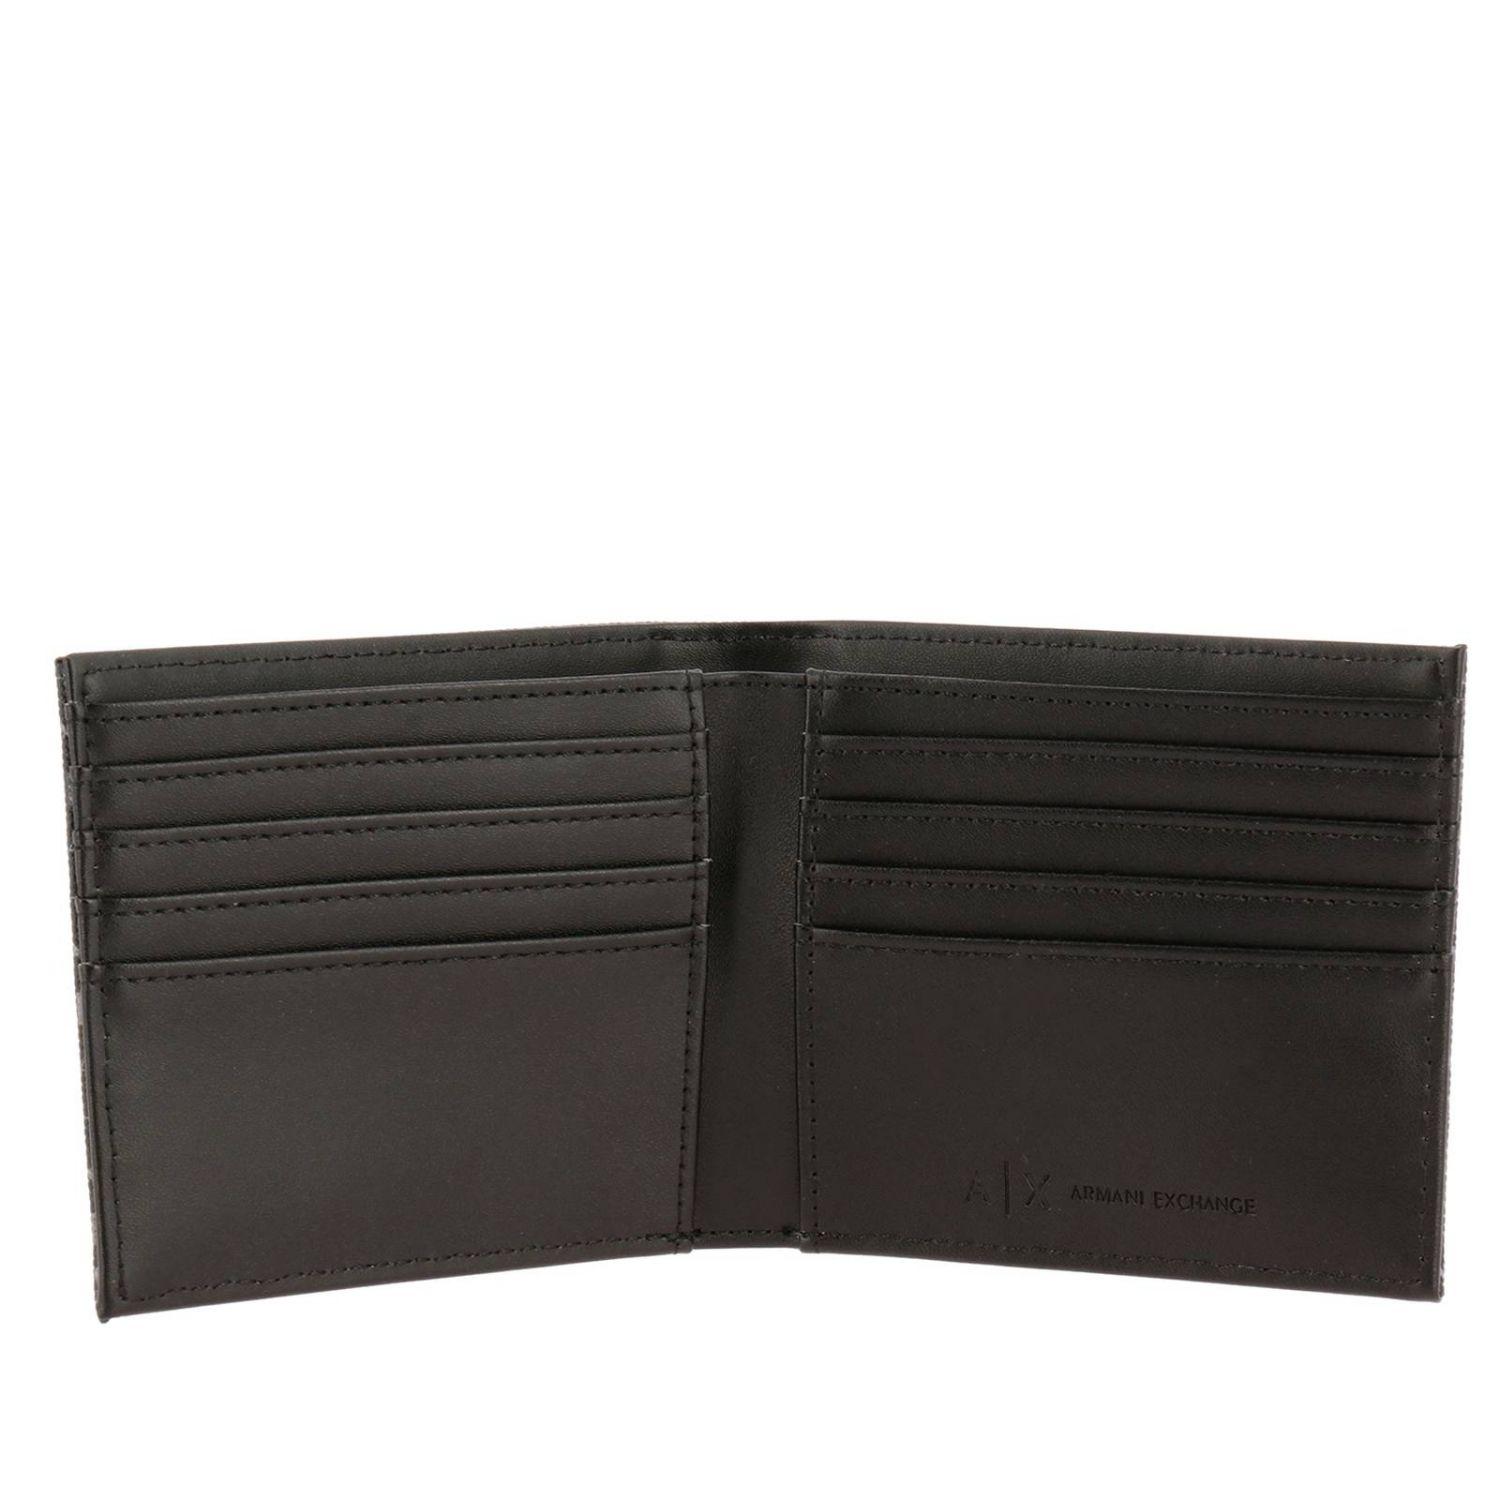 Armani Exchange Wallet Men in Black for Men - Save 16% - Lyst